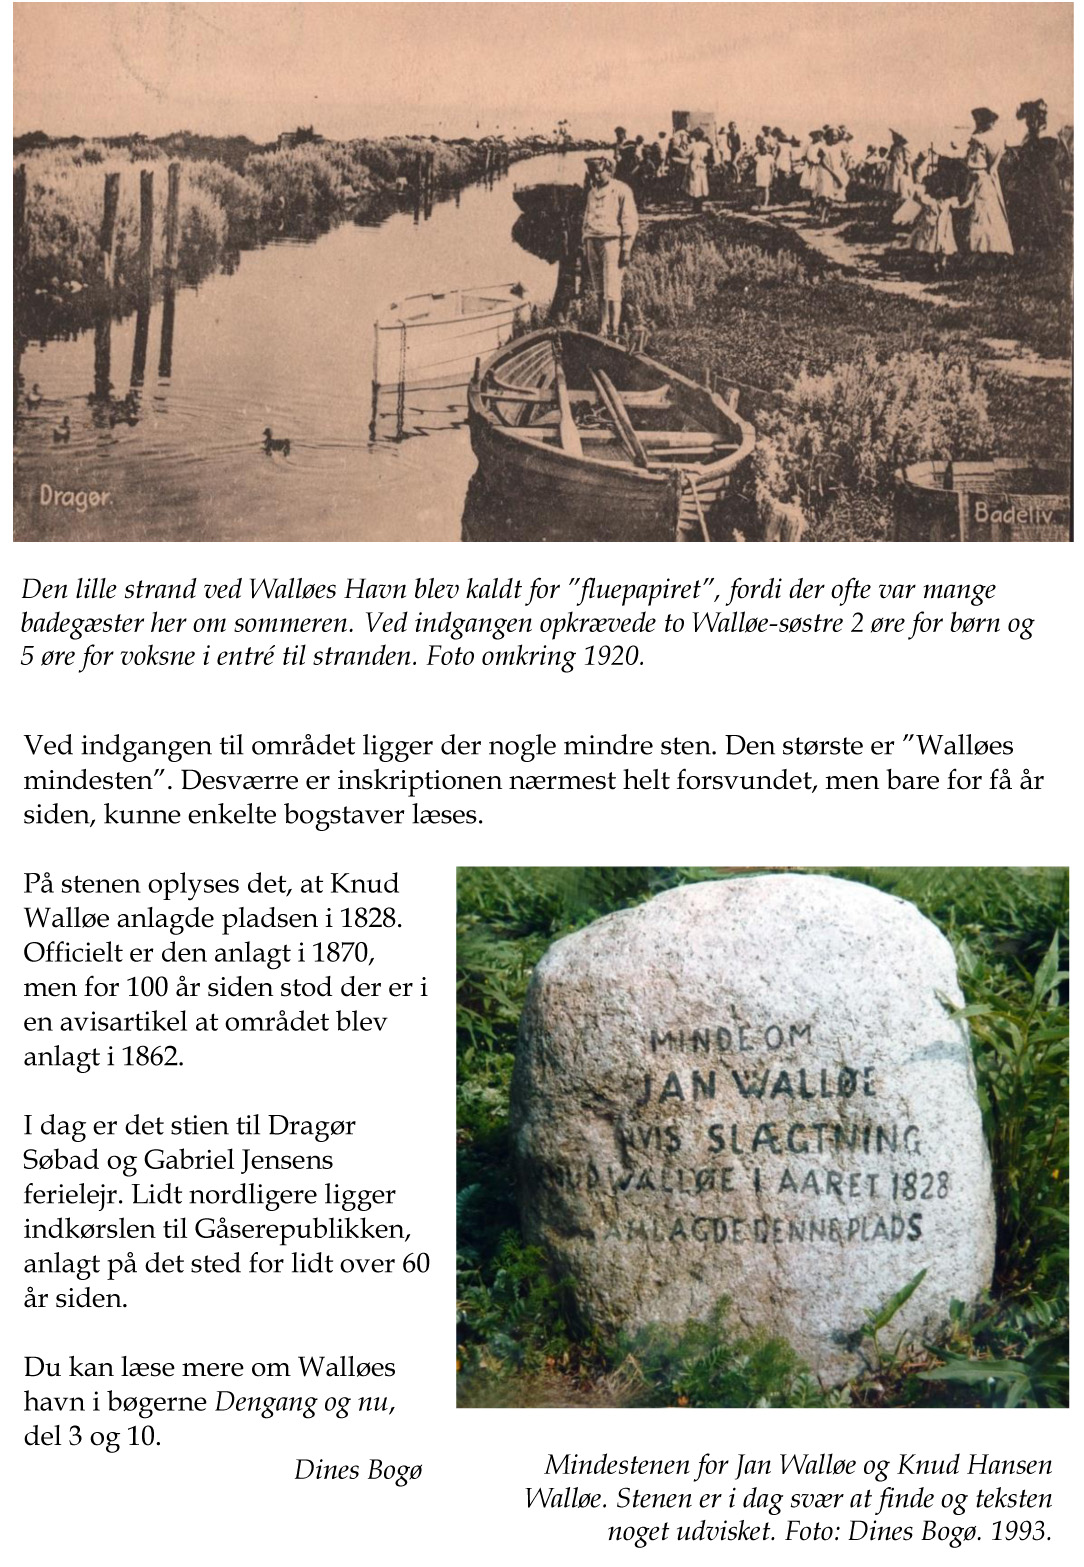 Walløes Havn - Dines Bogø